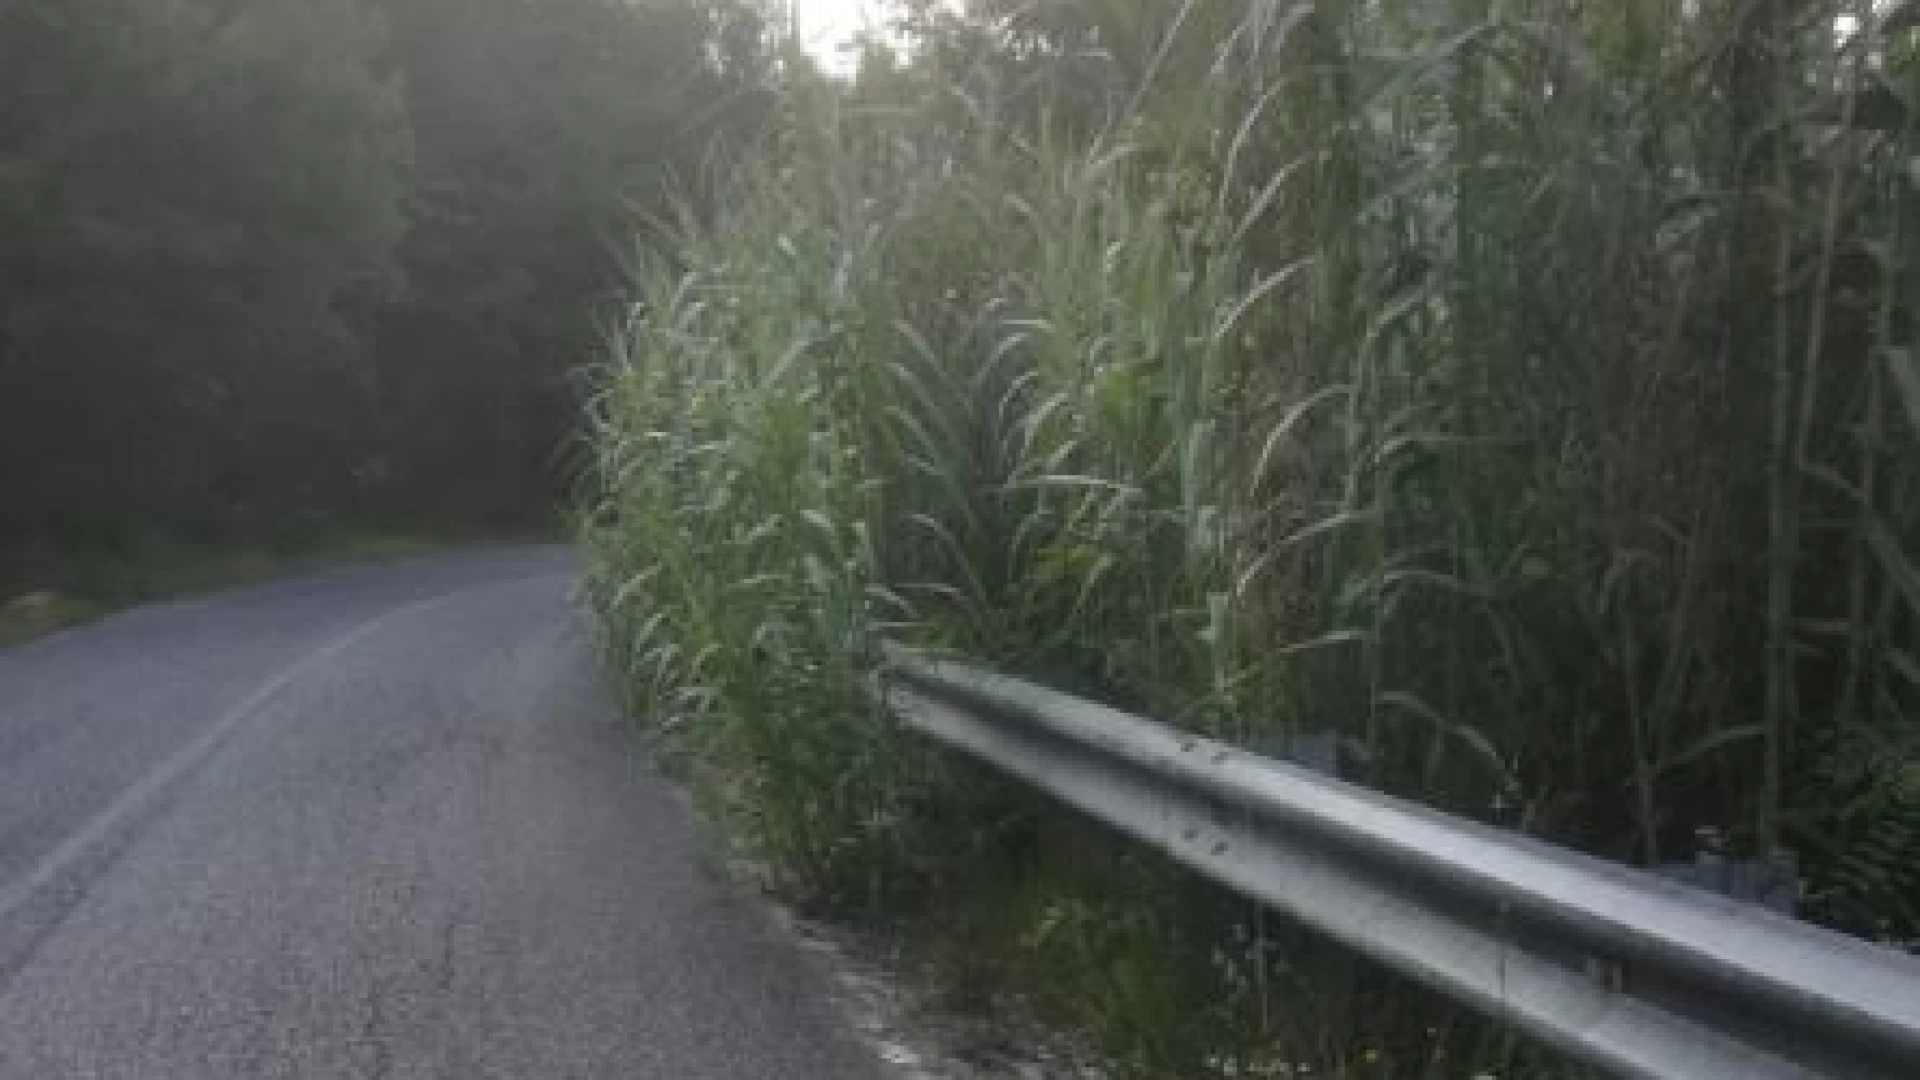 La strada provinciale tra Colli e Scapoli è pericolosa. L’allarme lanciato dai pedoni e dagli sportivi. La vegetazione invade a tratti la carreggiata stradale.